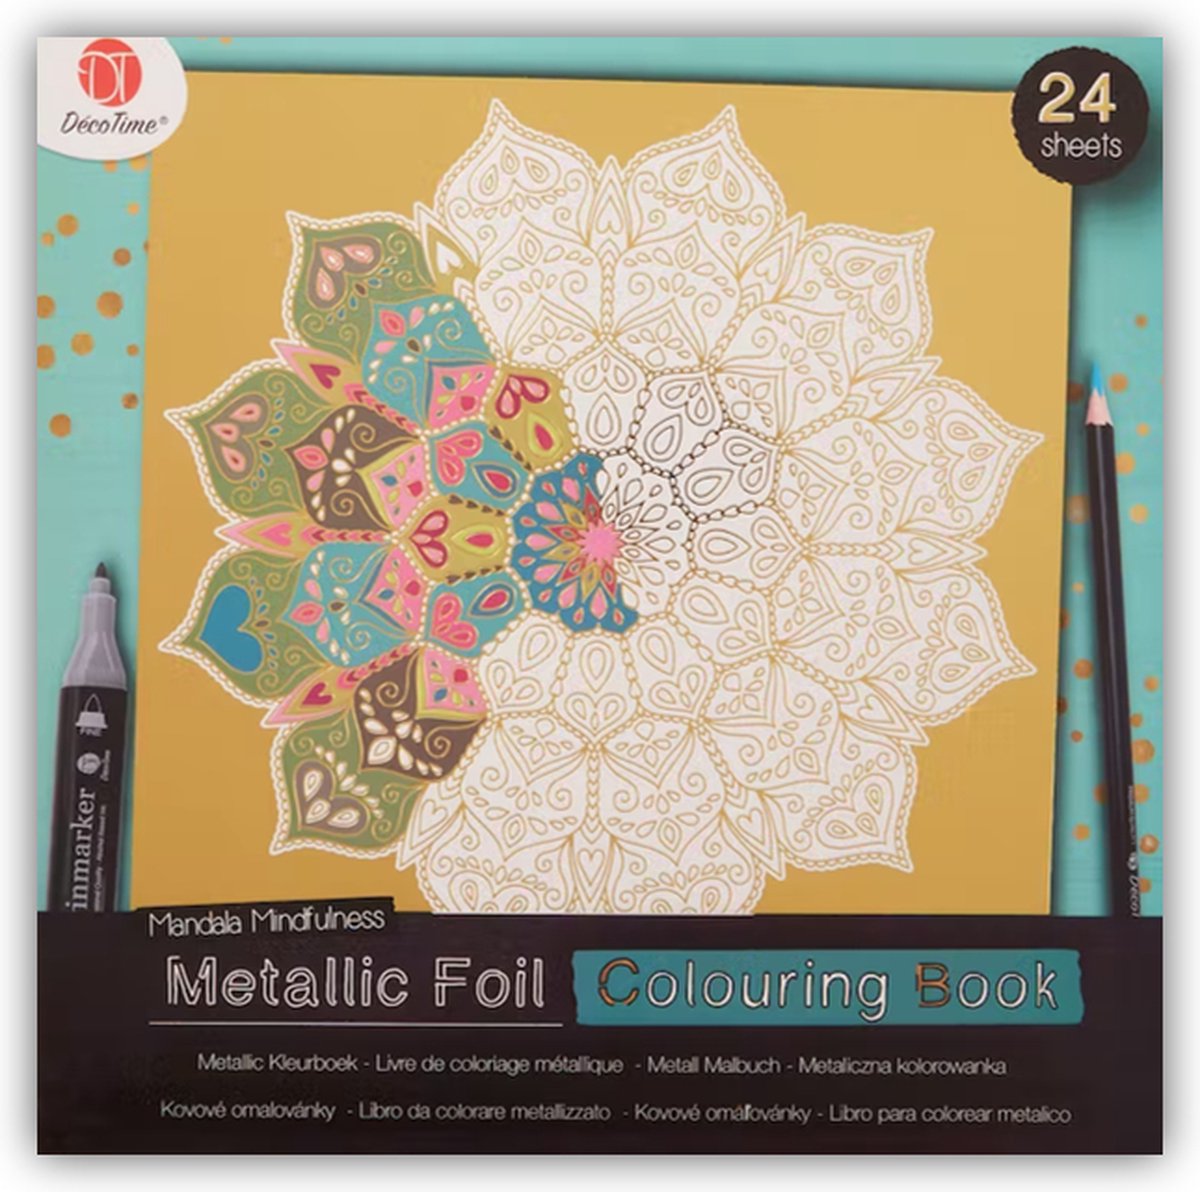 Kleurboek voor volwassen - Deco time - Gouden metallic kleurboek - Metallic Foil Colouring Book - Goud - Kleuren - Tekenen - Mandala Mindfulness - 24 sheets.